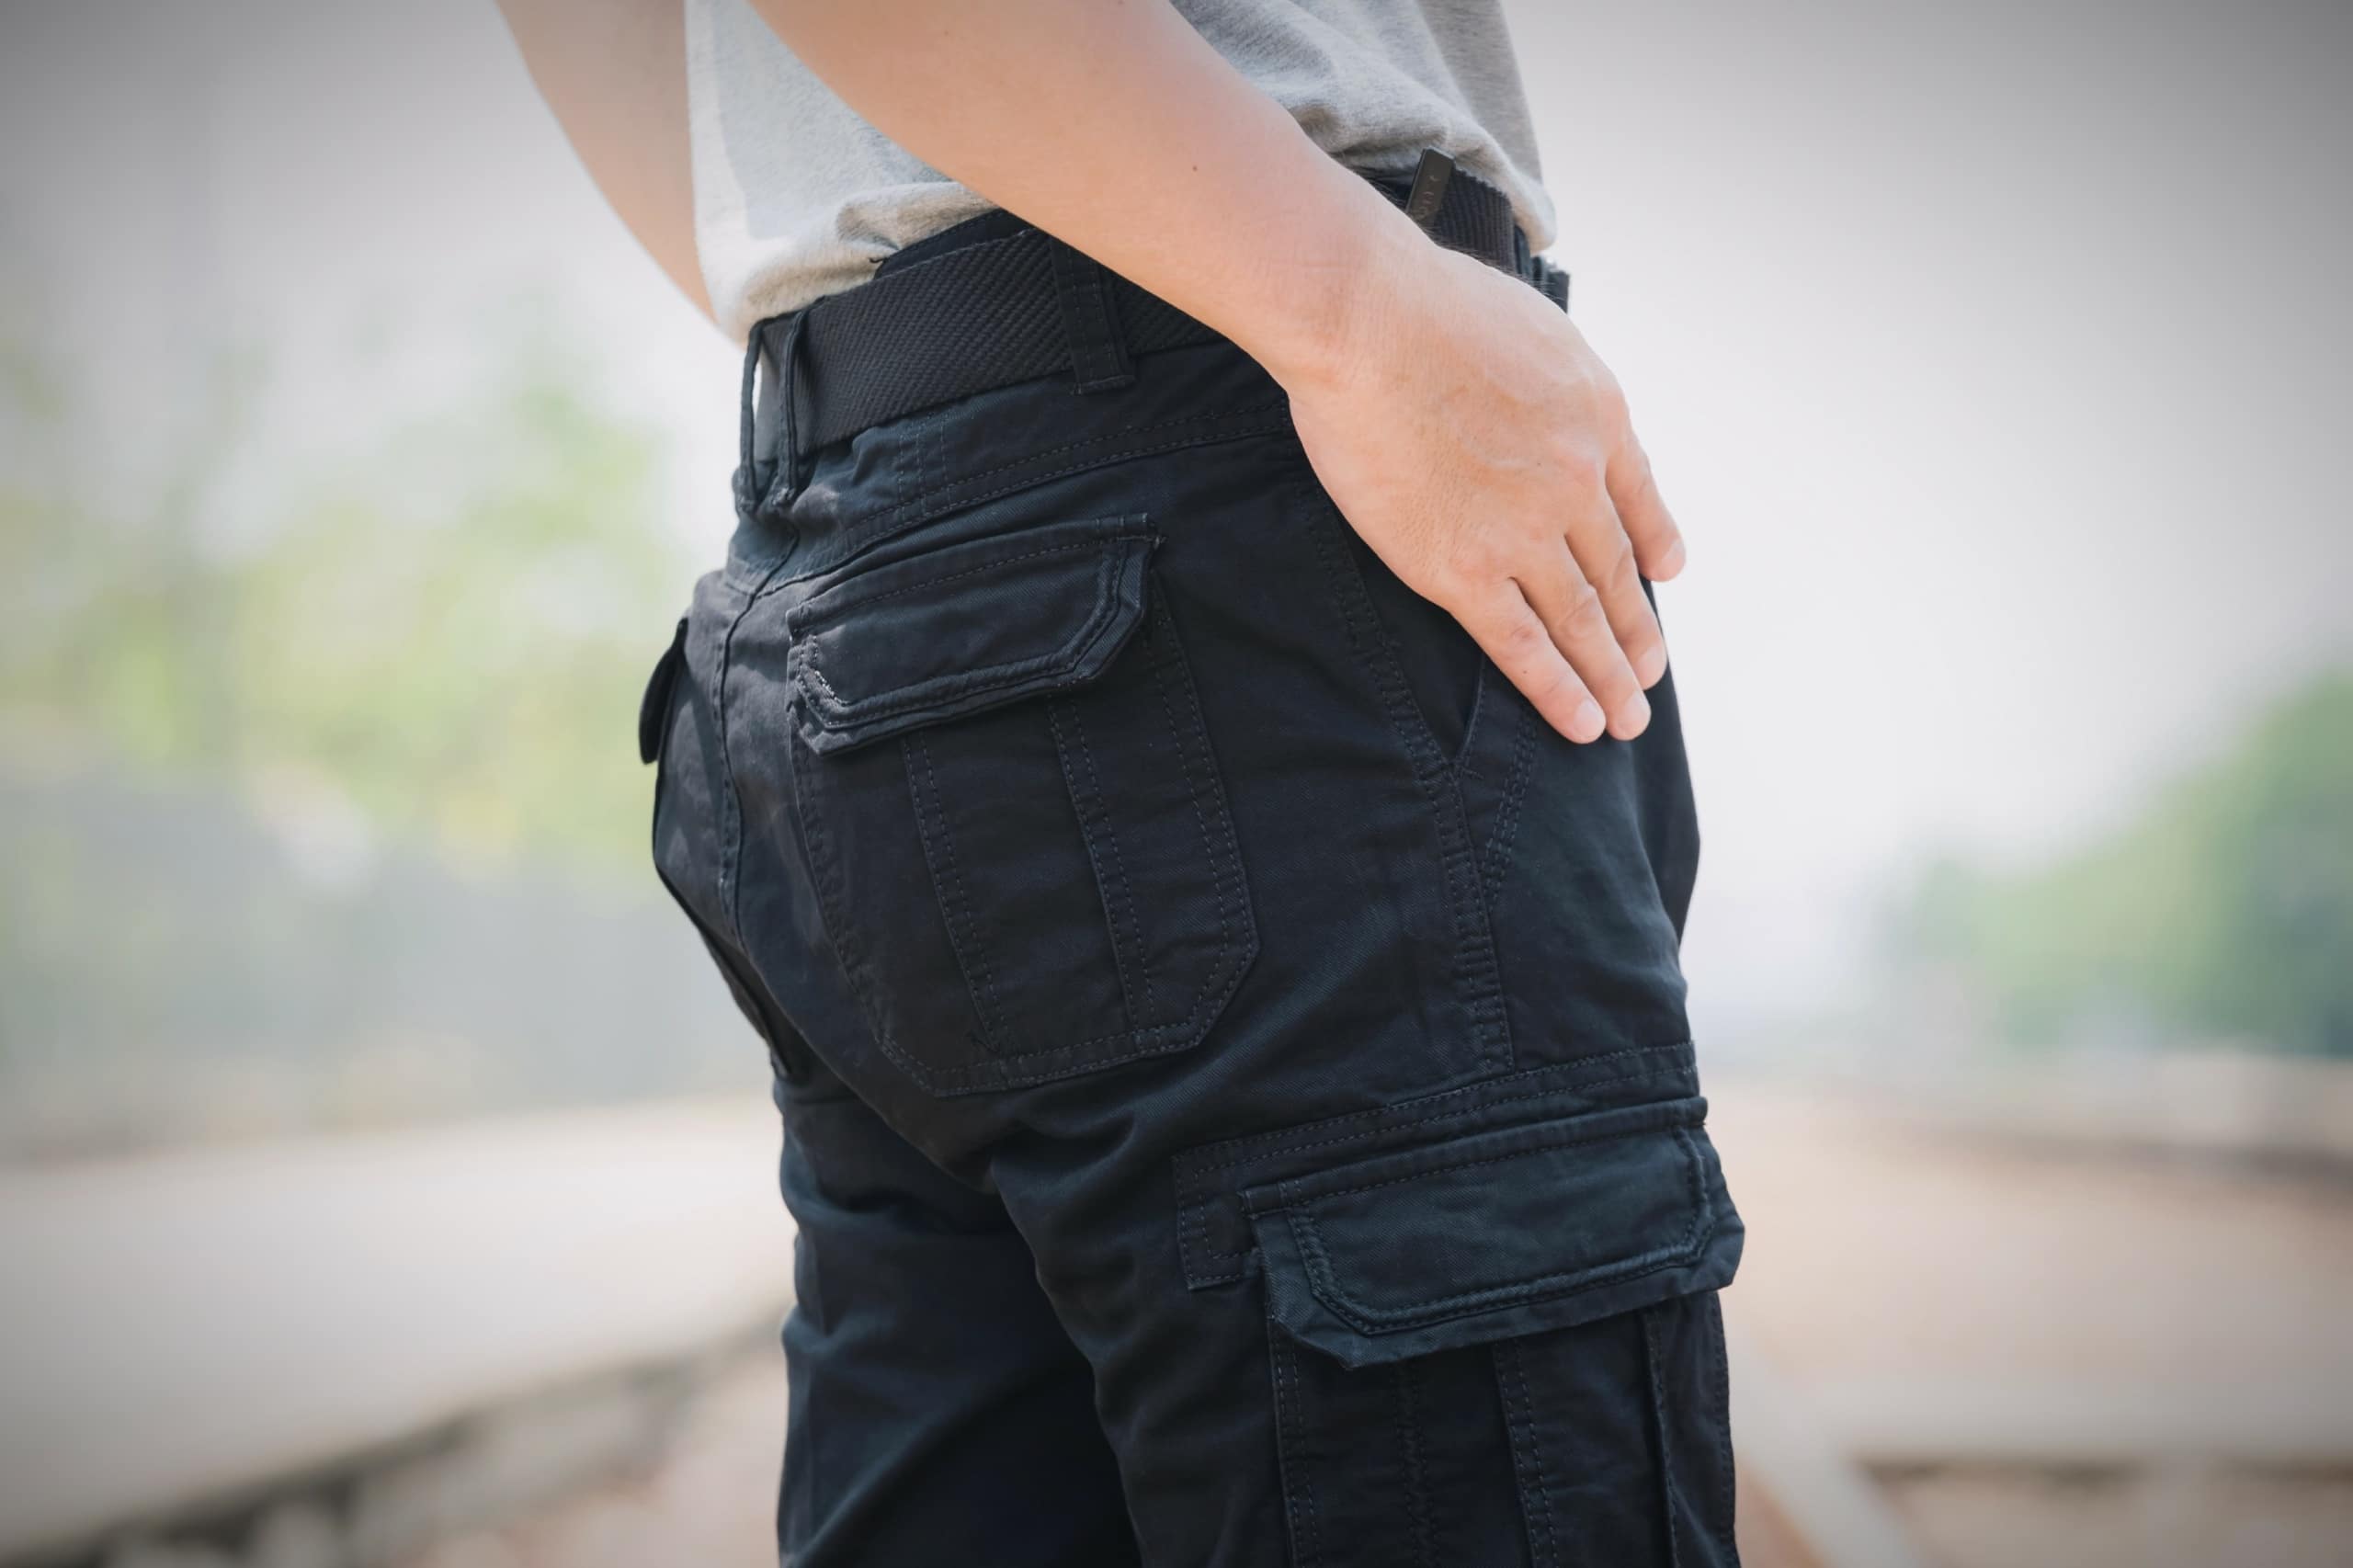 Comment bien porter son pantalon cargo homme ? – ILANNFIVE